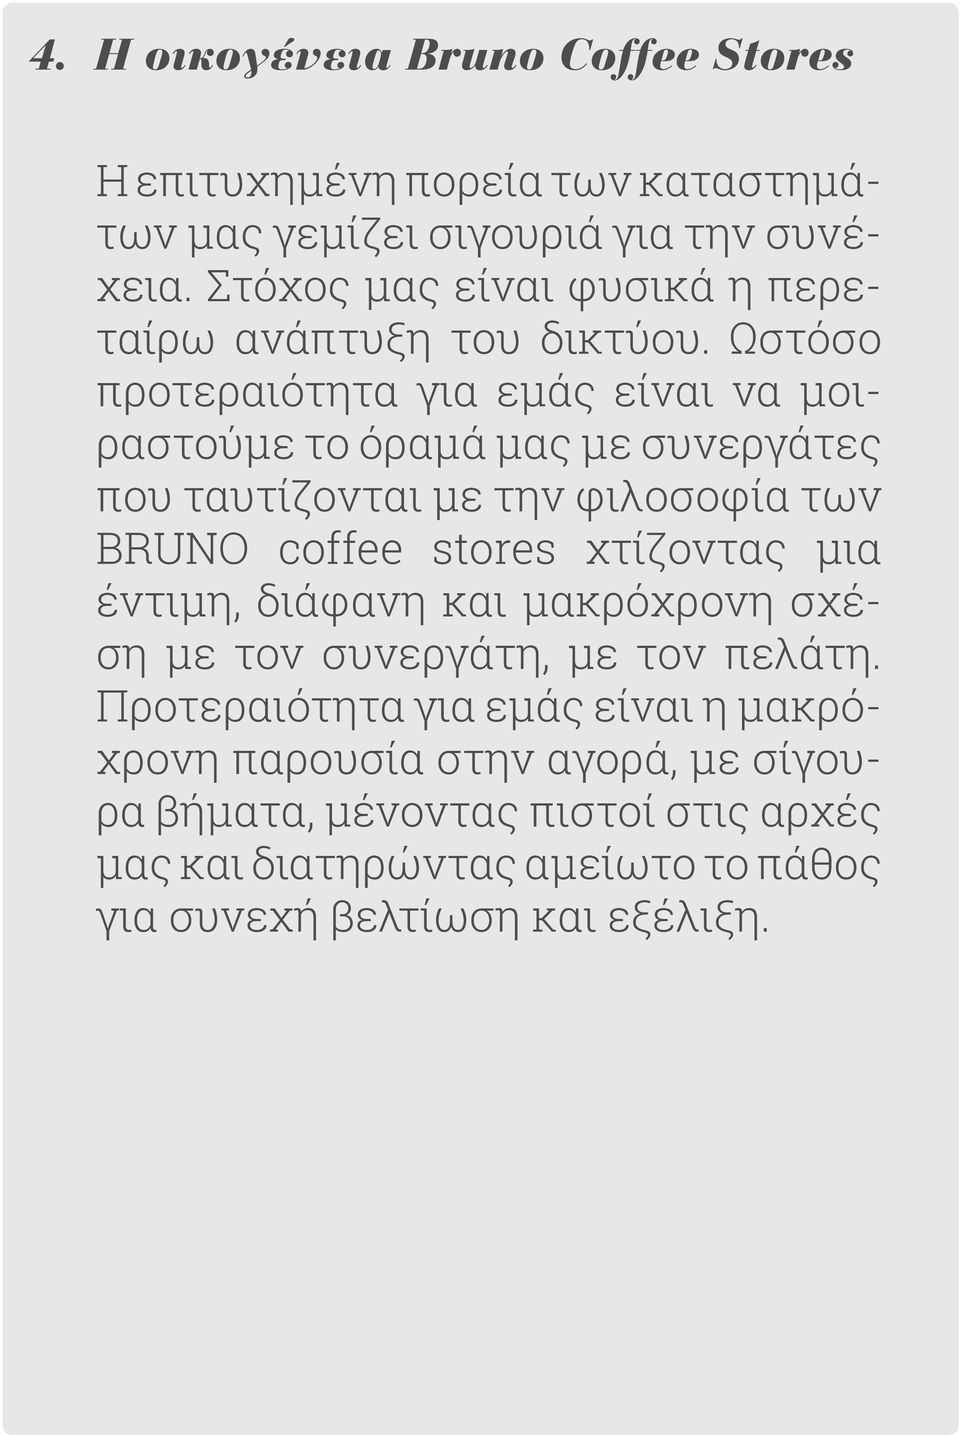 Ωστόσο προτεραιότητα για εμάς είναι να μοιραστούμε το όραμά μας με συνεργάτες που ταυτίζονται με την φιλοσοφία των BRUNO coffee stores